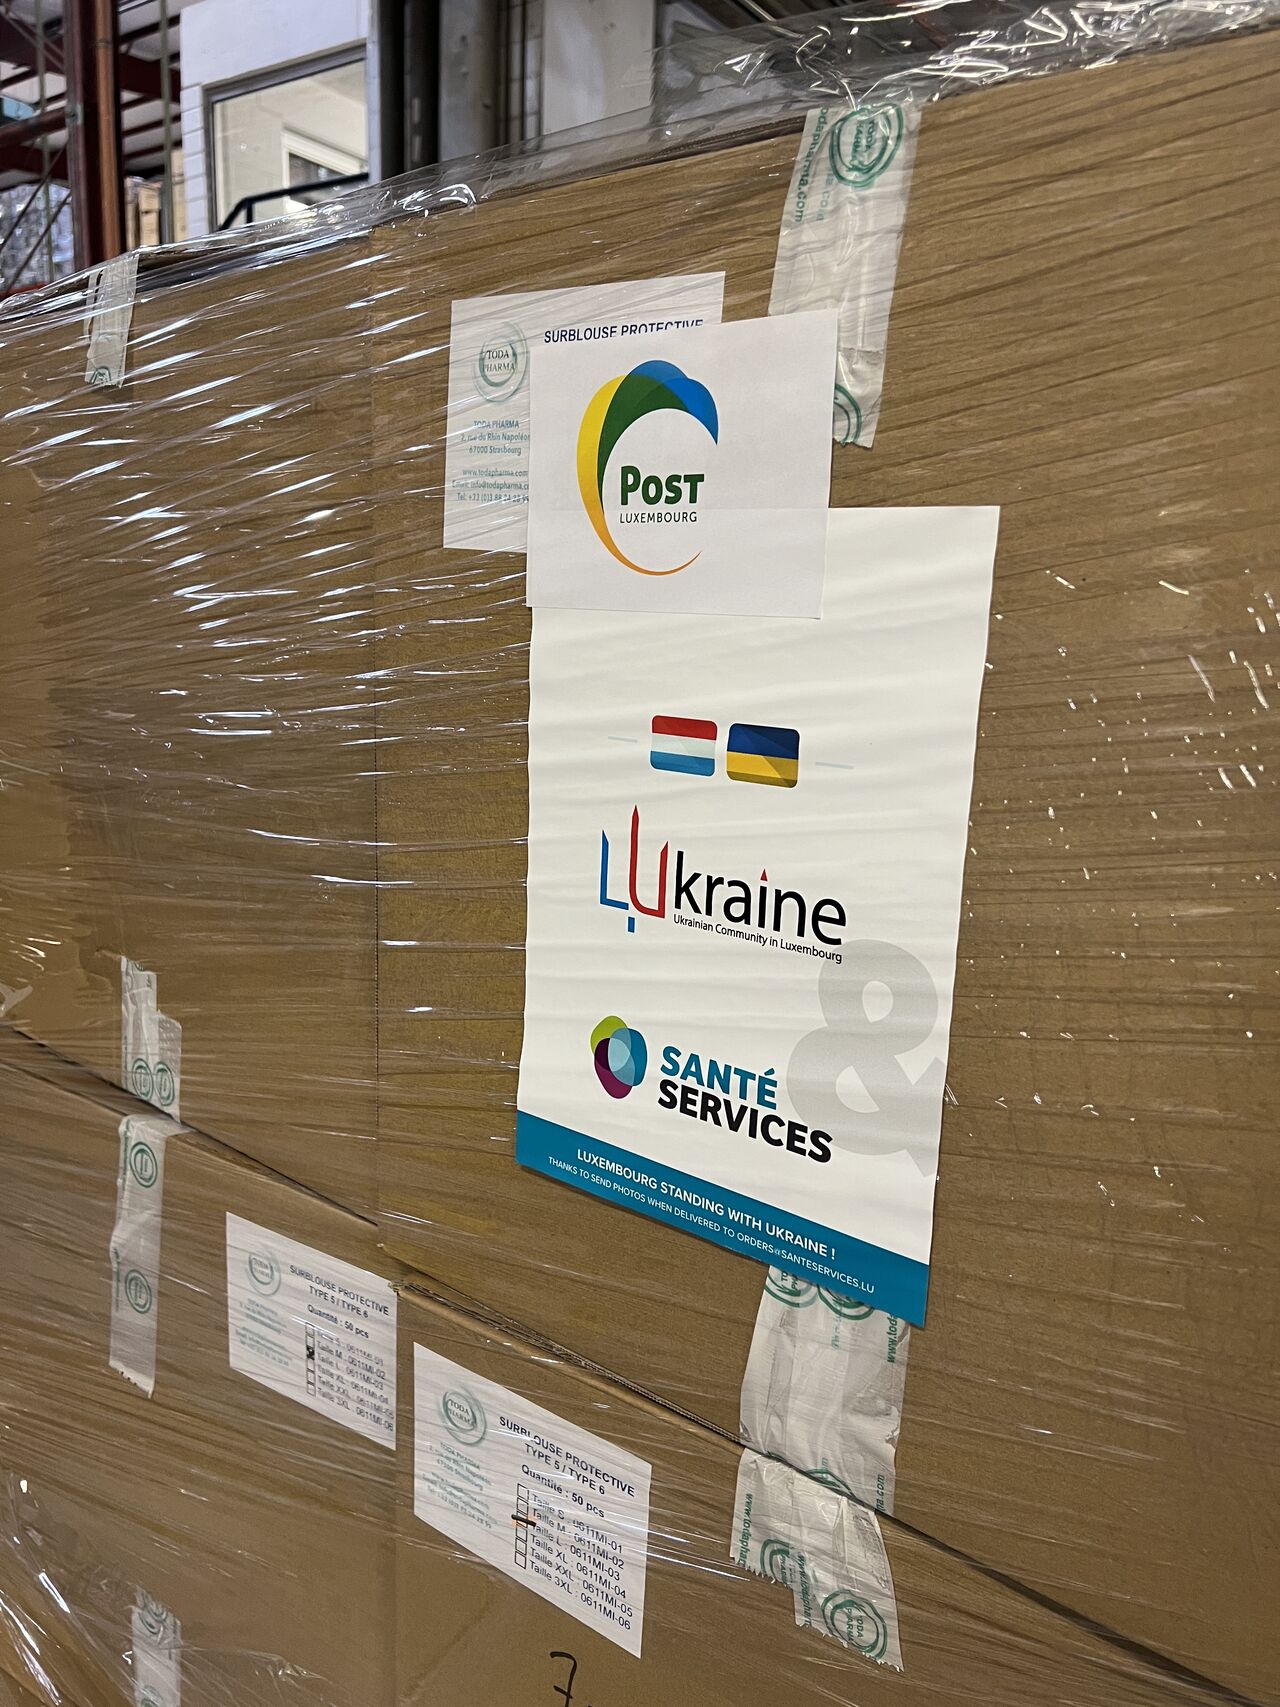 Envoi de 2 camions avec du matériel médical vers l'Ukraine